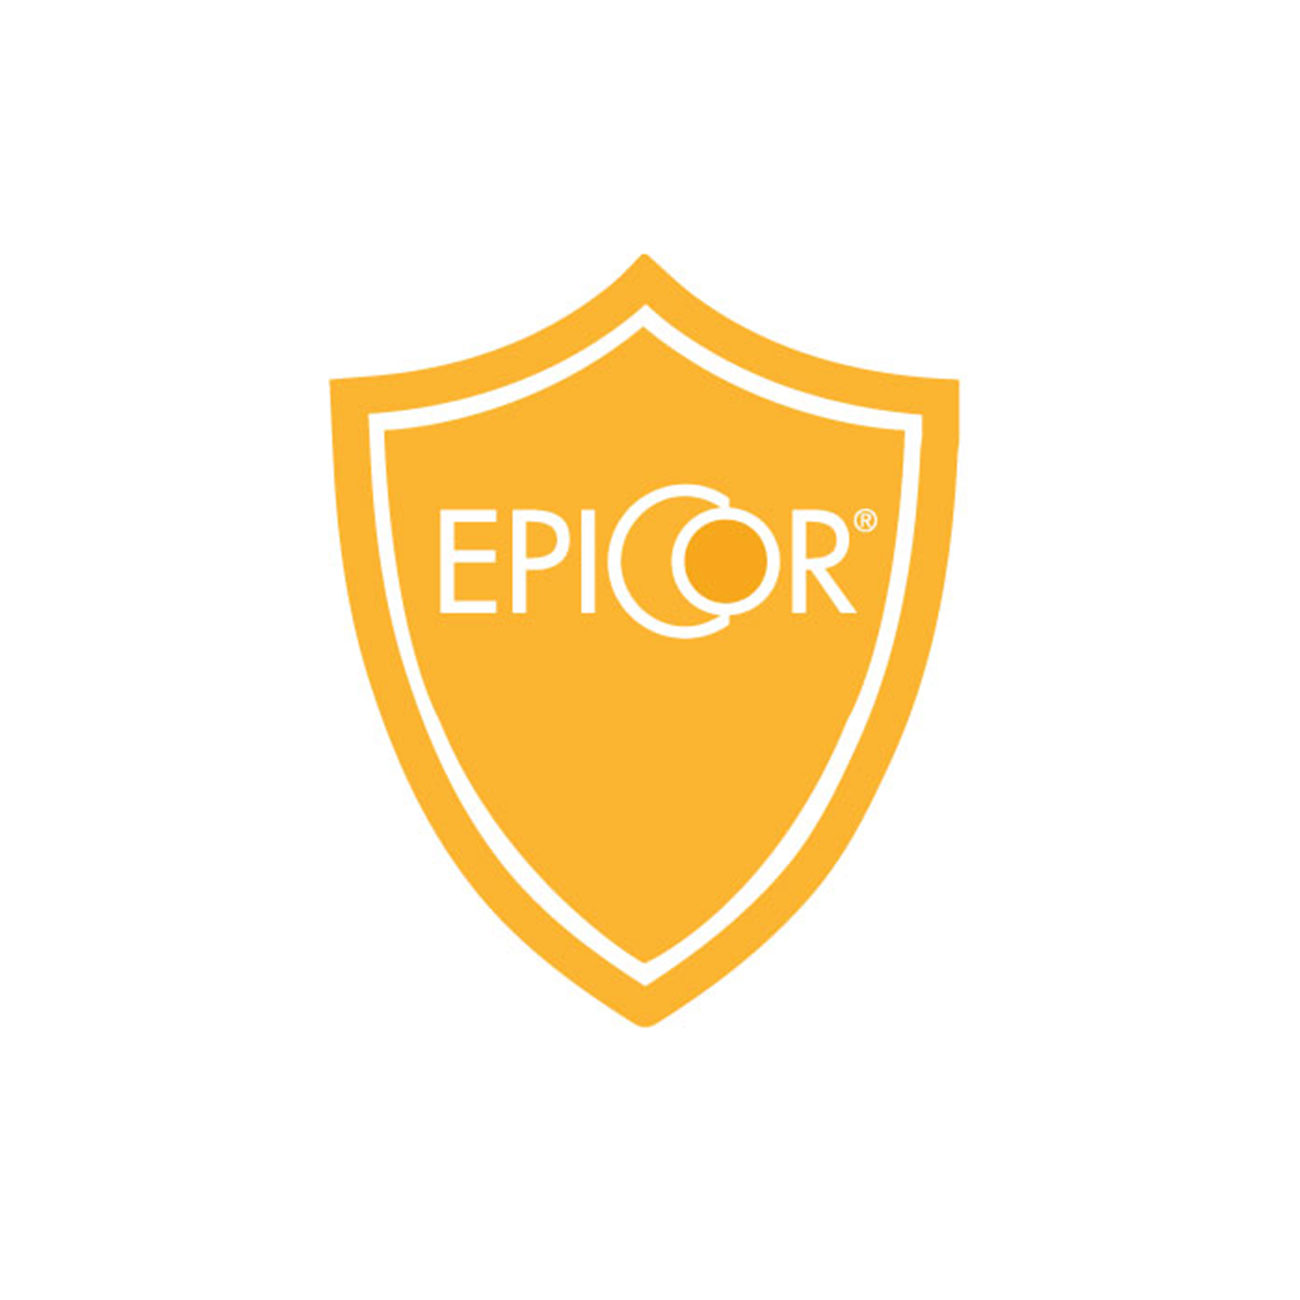 EpiCor® - ένα επιστημονικώς τεκμηριωμένο συμπλήρωμα διατροφής για την ενίσχυση του ανοσοποιητικού συστήματος - icon